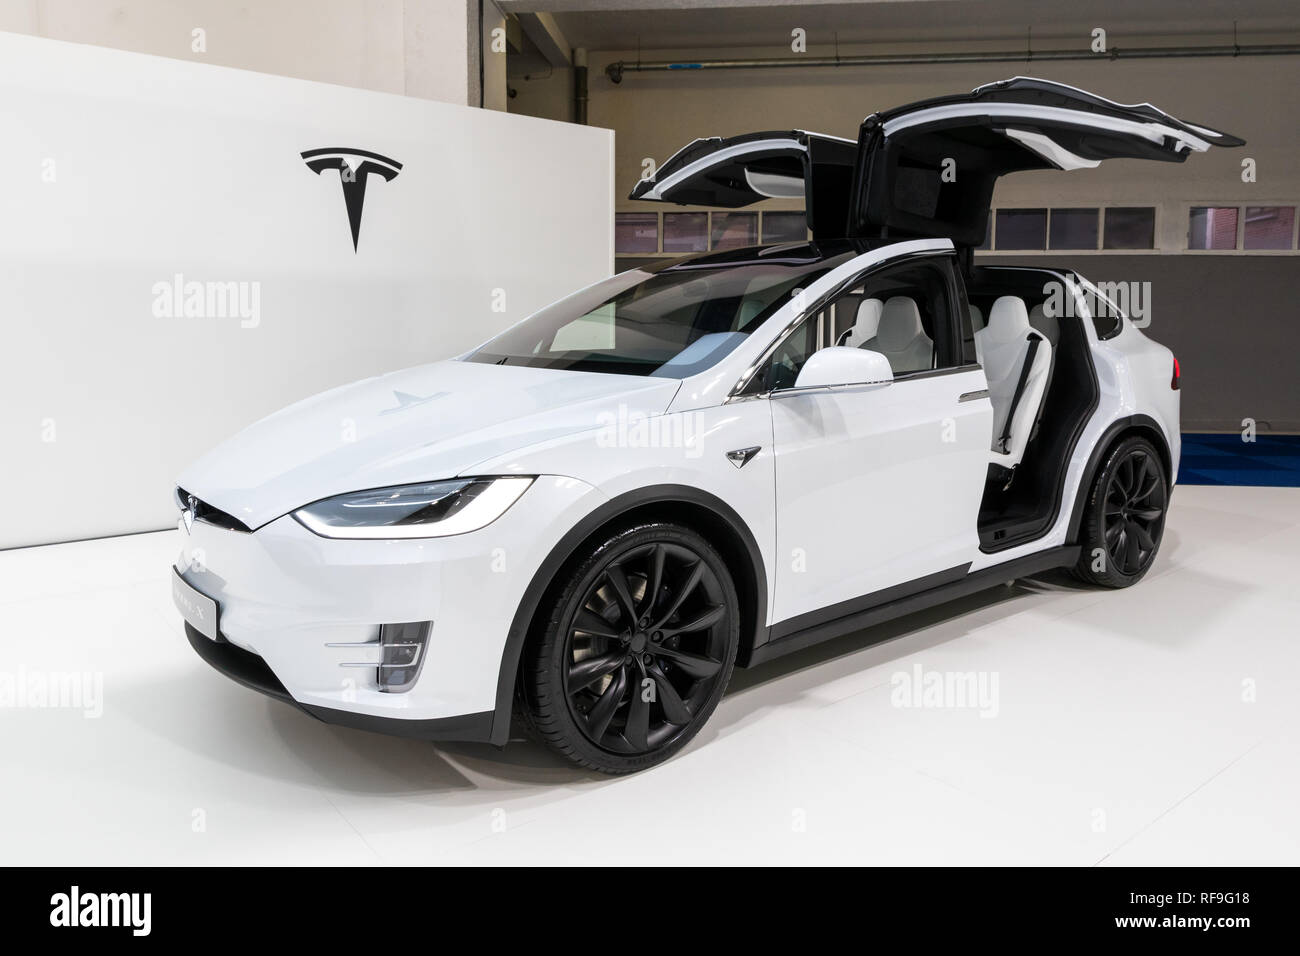 Bruxelles - Jan 18, 2019: Tesla Model X elettrico crossover di lusso auto suv presentati presso la 97Bruxelles Motor Show 2019 Autosalon. Foto Stock